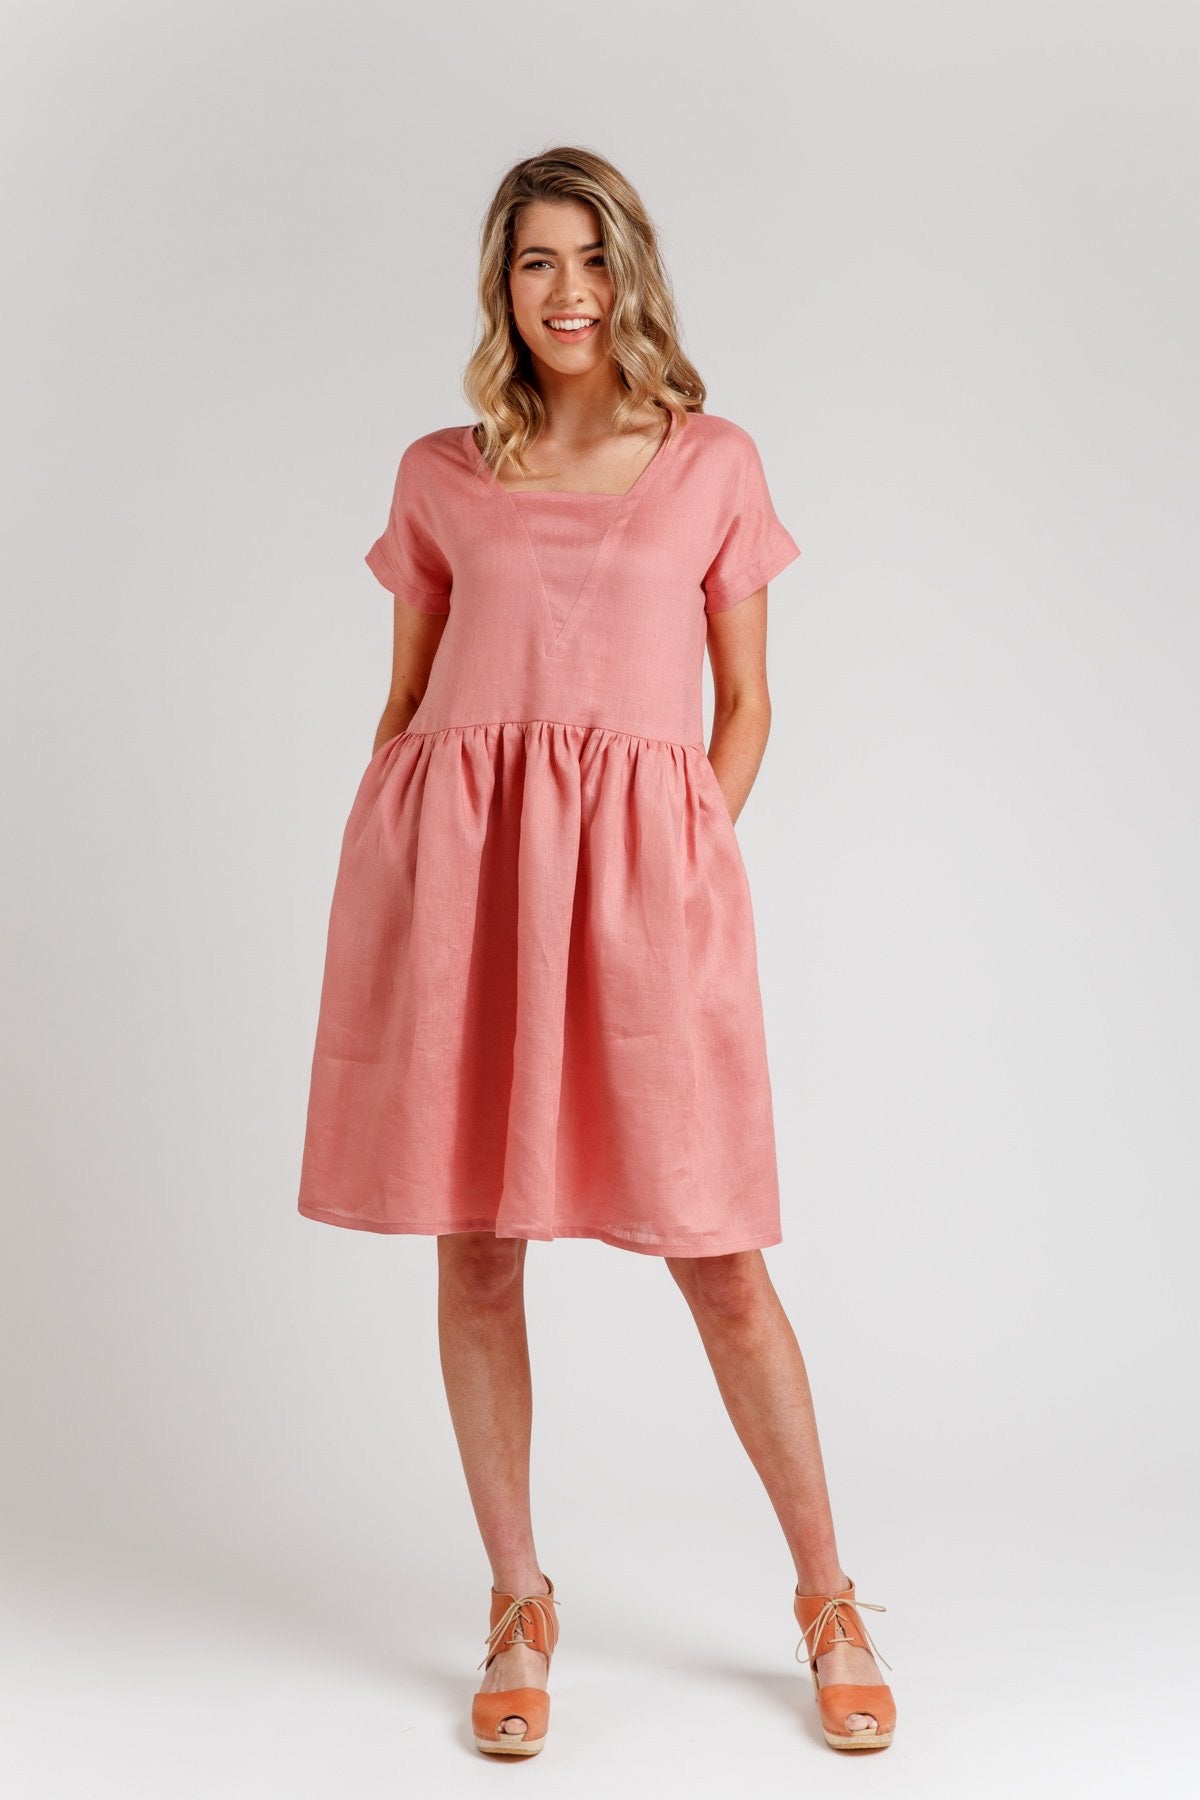 Megan Nielsen Olive Dress and Top – Minerva's Bower